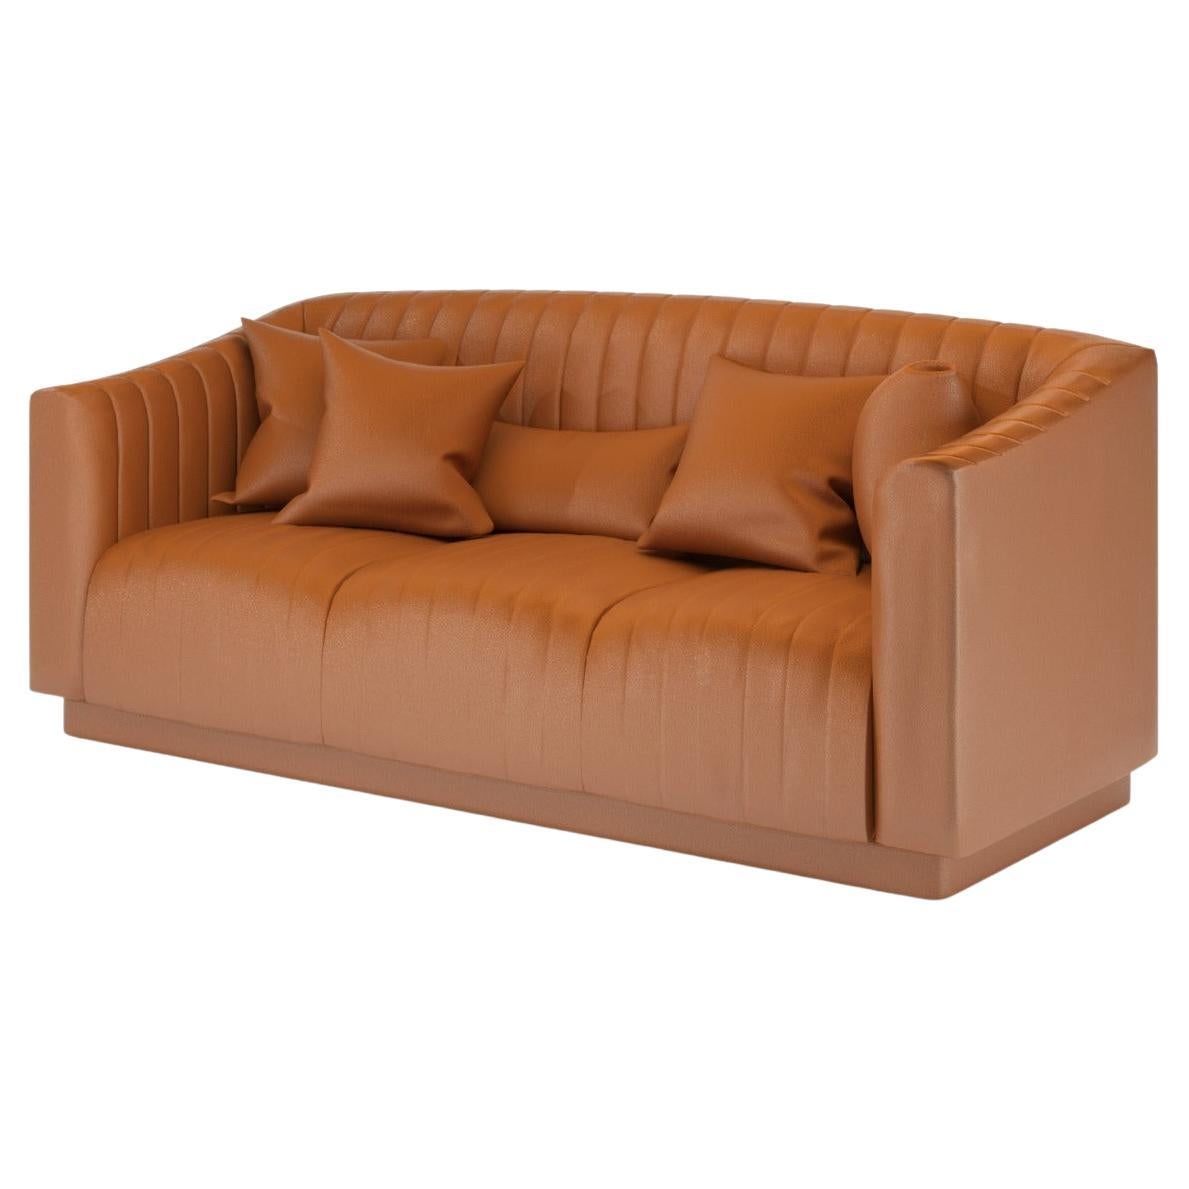 Canapé moderne en cuir marron Uphostery